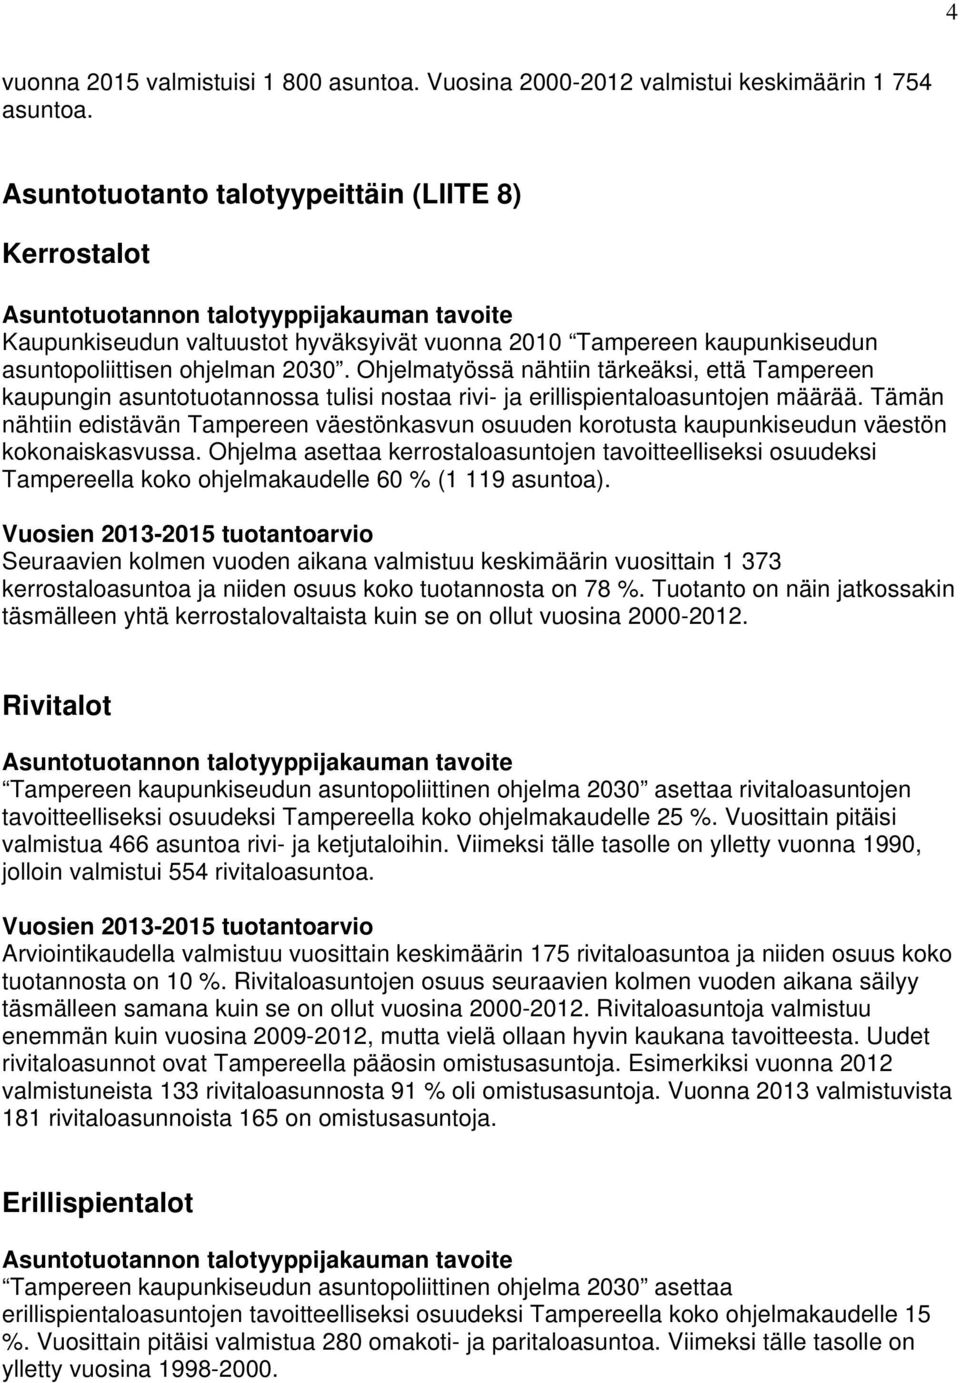 Ohjelmatyössä nähtiin tärkeäksi, että Tampereen kaupungin asuntotuotannossa tulisi nostaa rivi- ja erillispientaloasuntojen määrää.